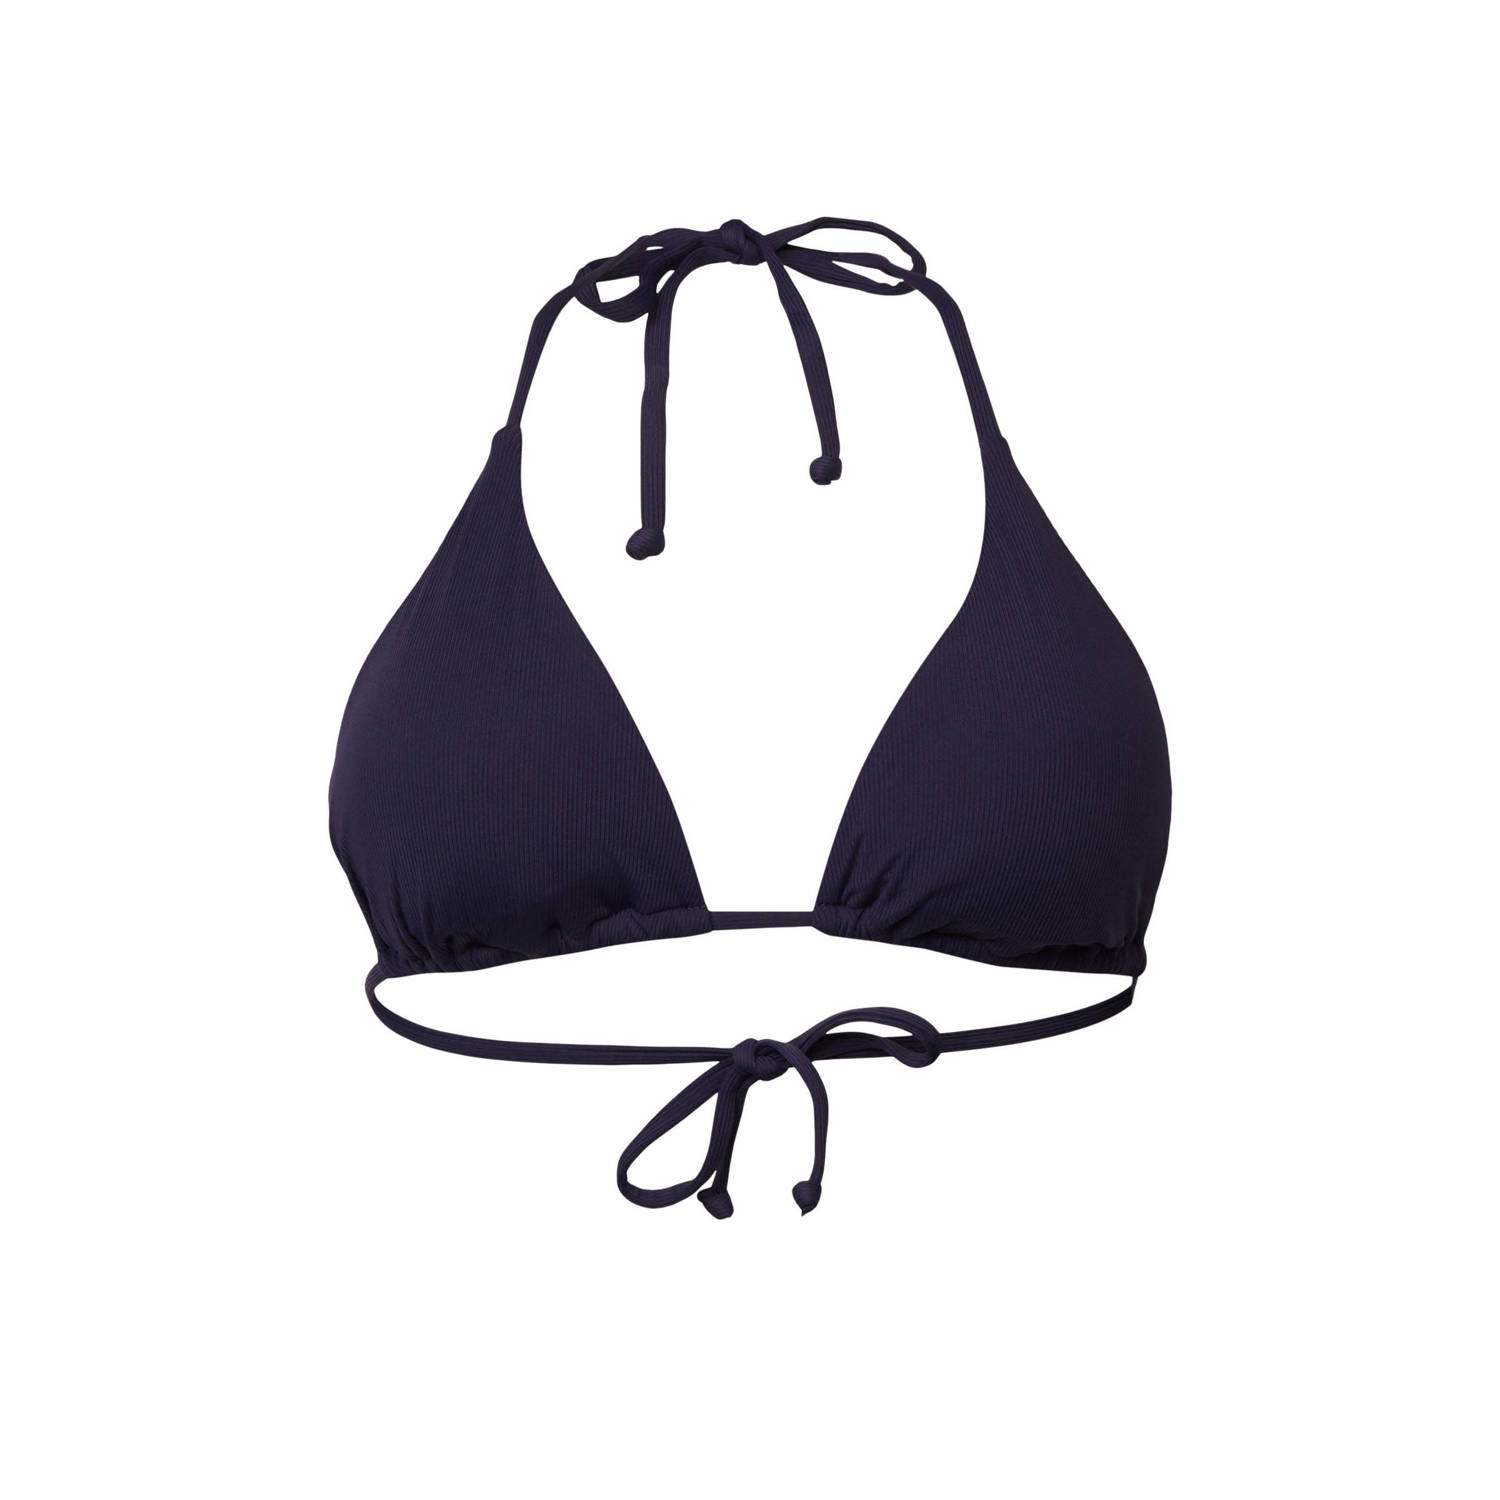 ESPRIT Women Beach voorgevormde triangel bikinitop donkerblauw